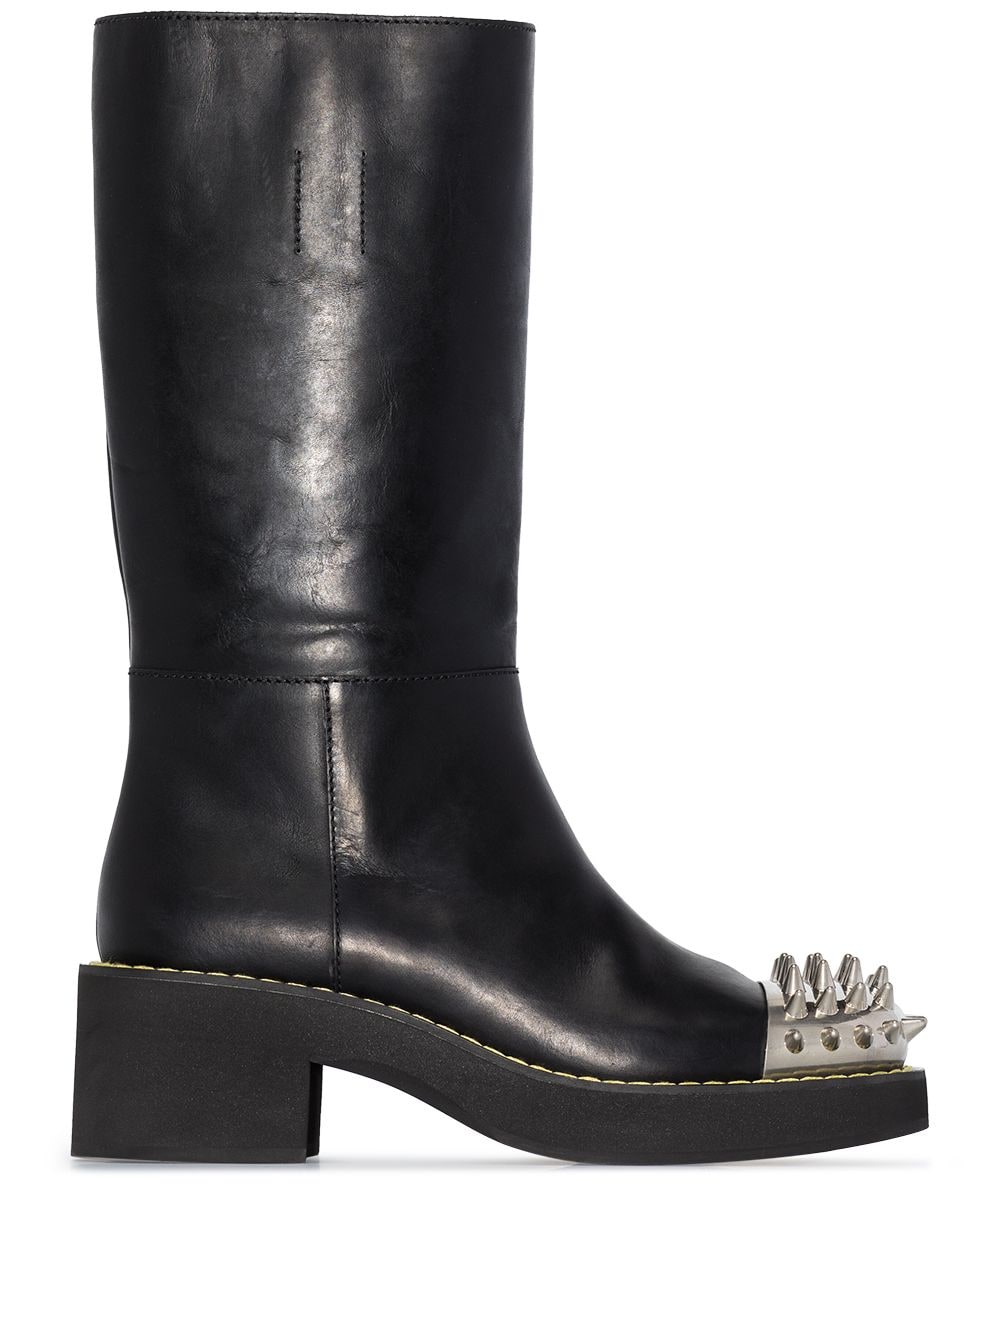 Leather Boots дамски обувки Miu Miu 846451651_35